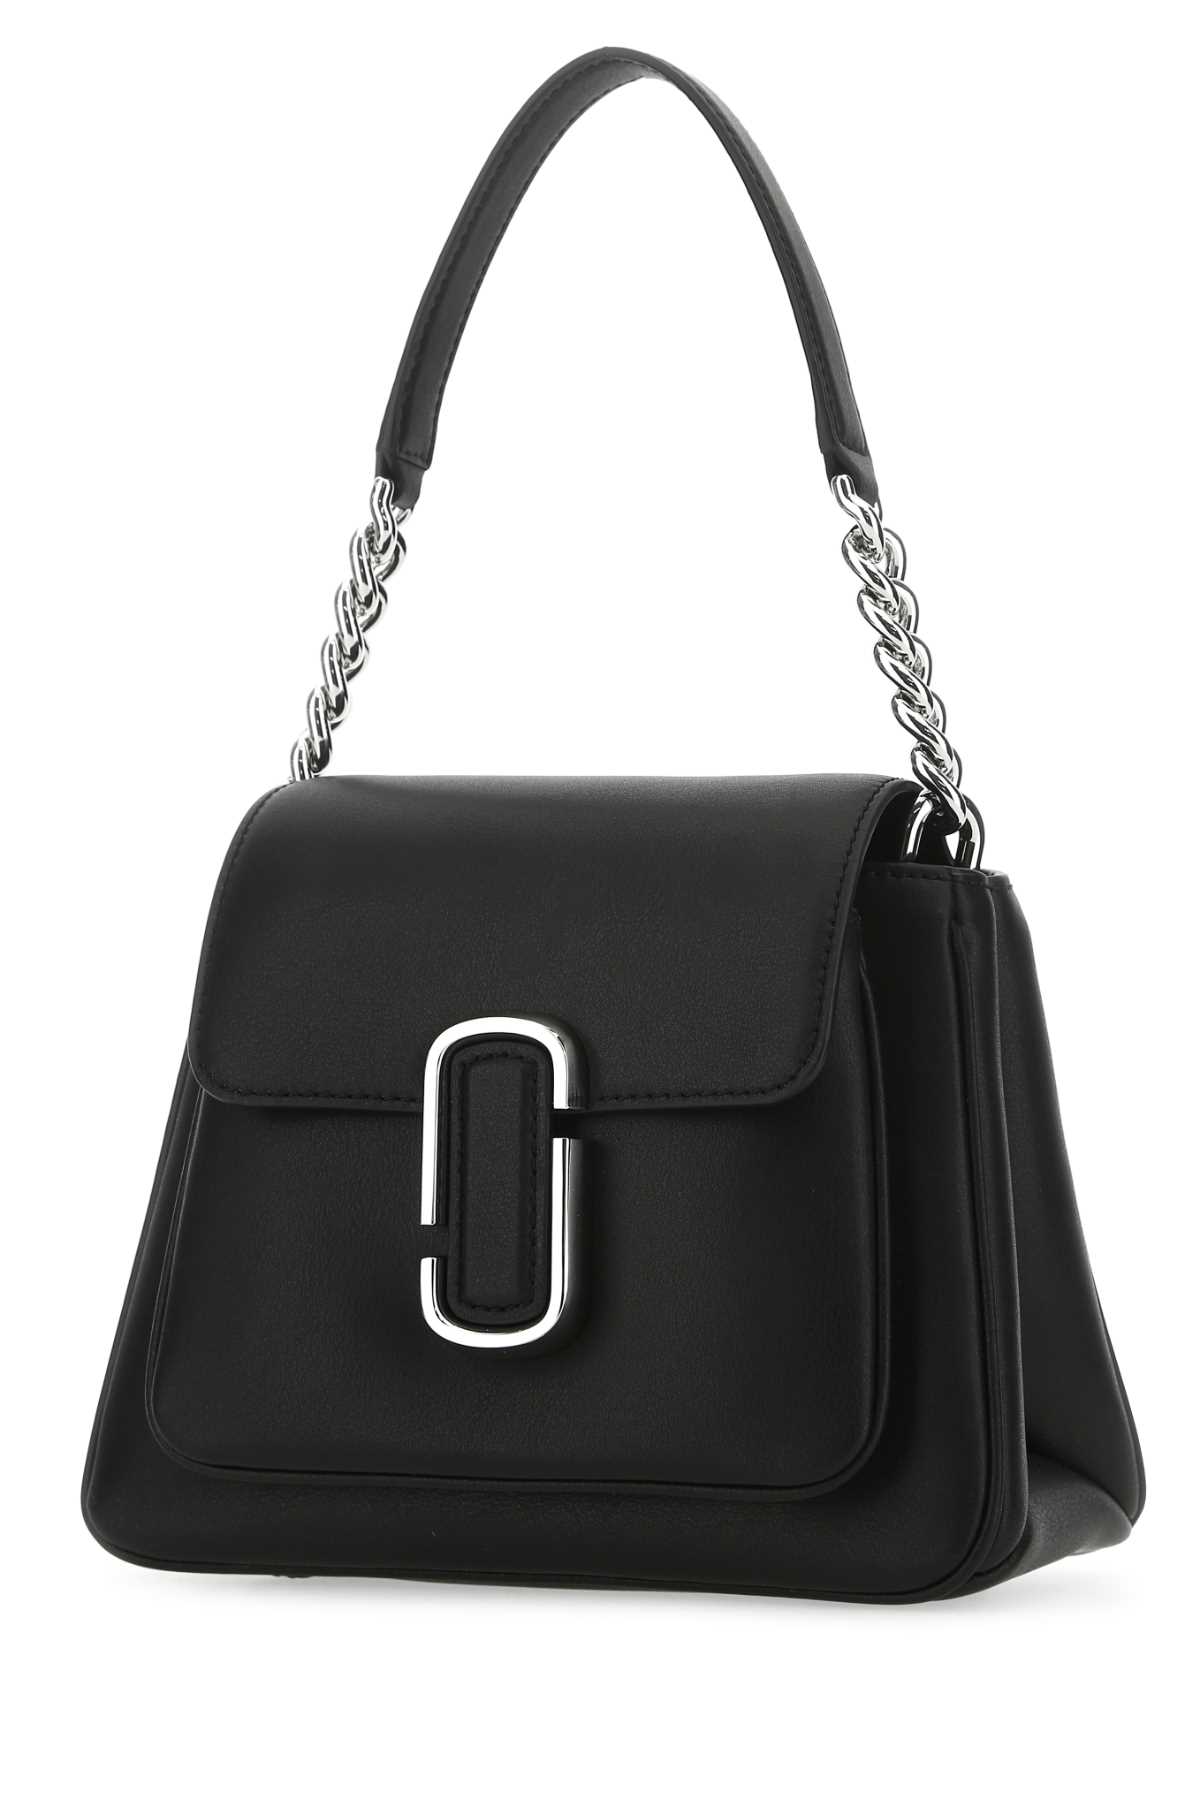 Marc Jacobs Black Leather Mini J Marc Shoulder Bag In 053